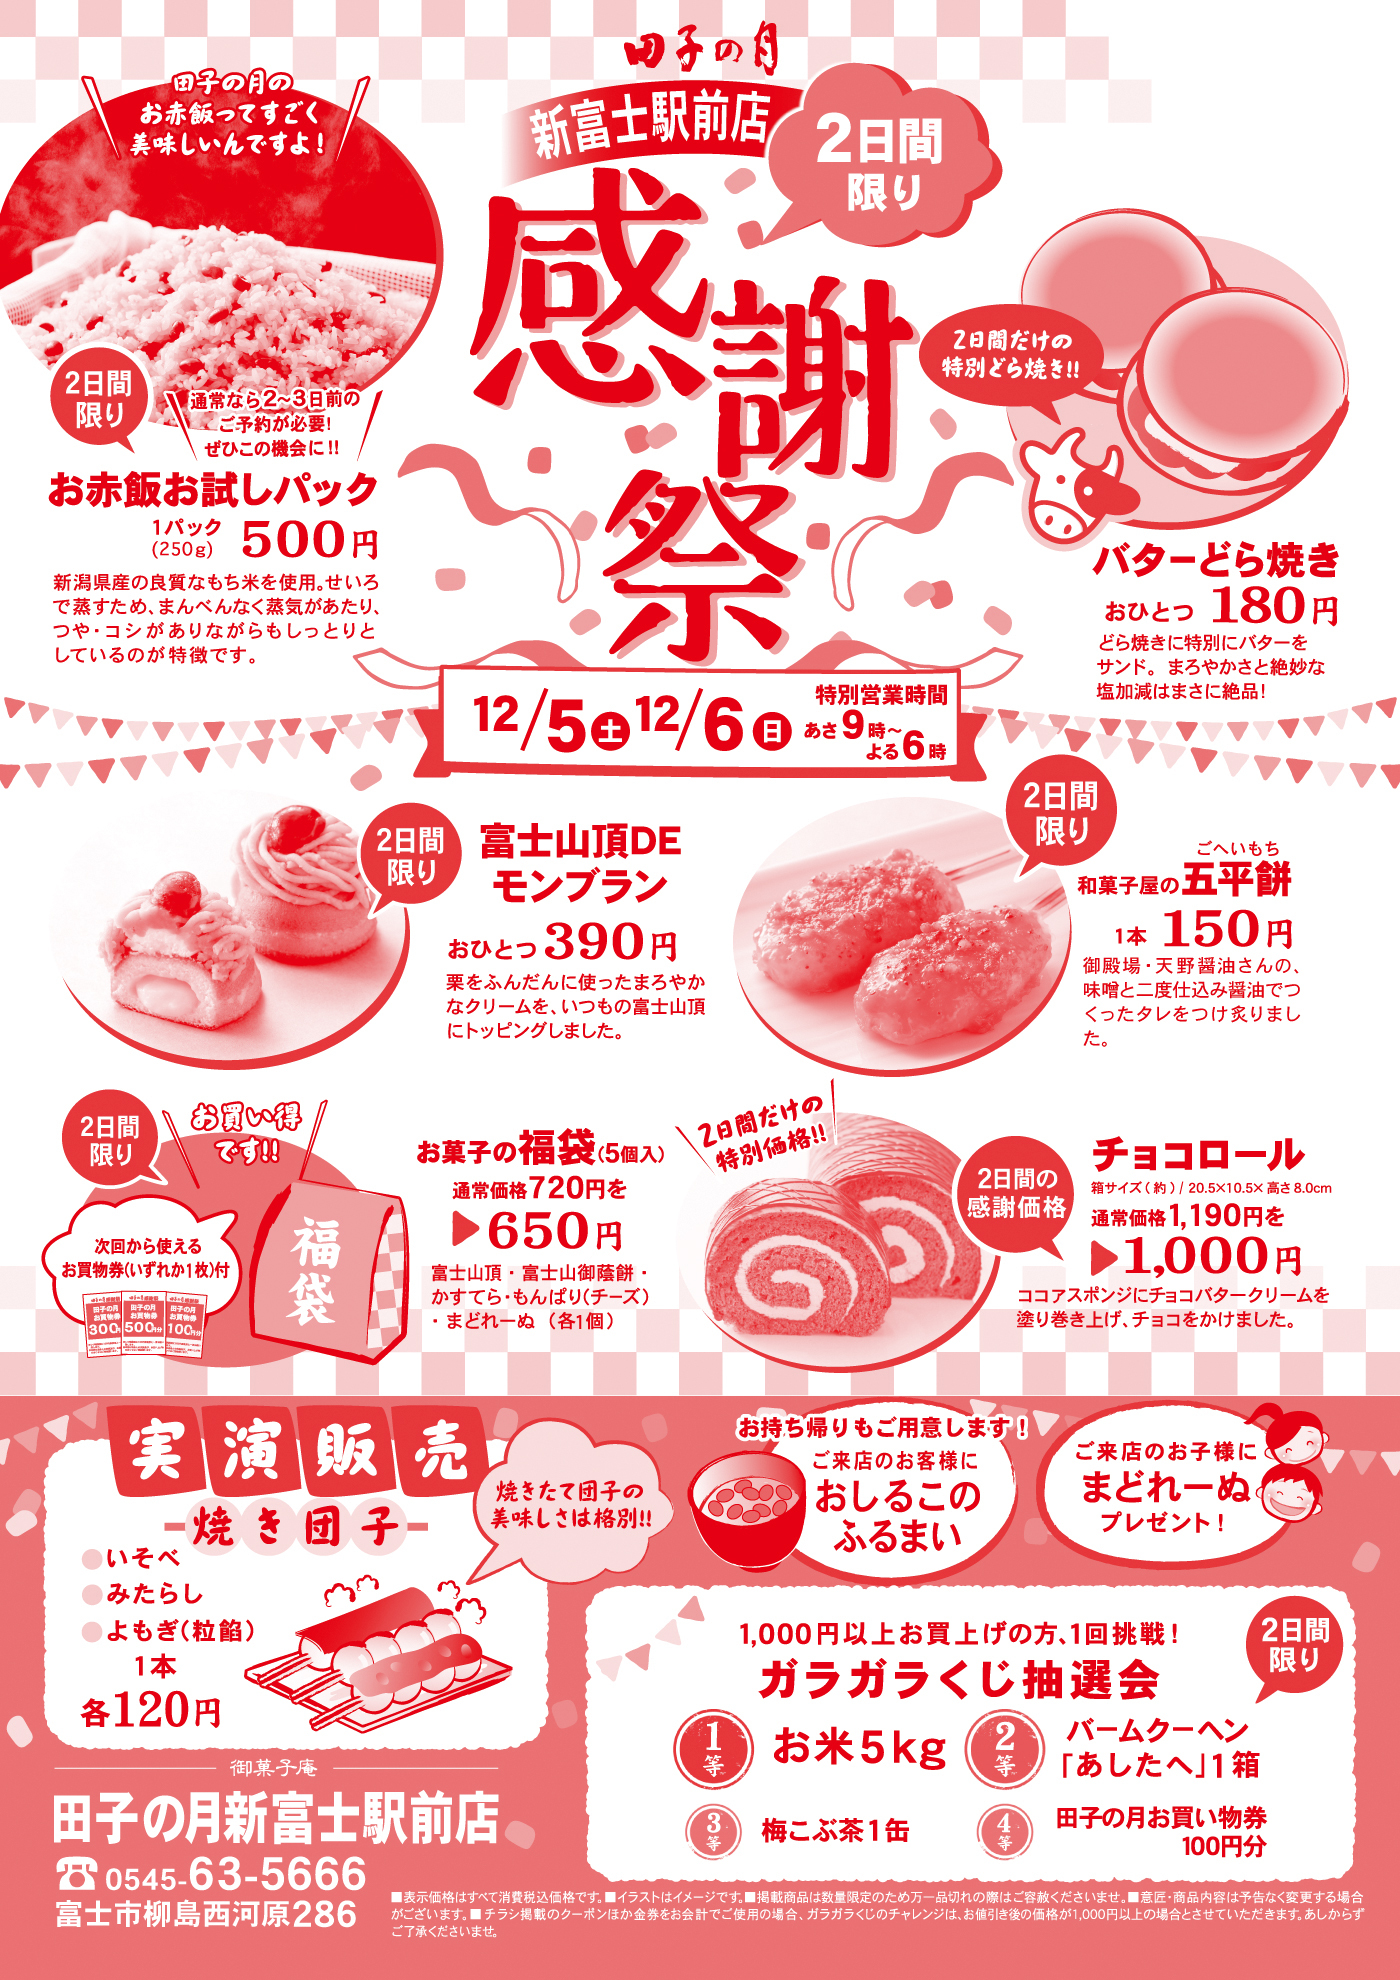 田子の月新富士駅前店感謝祭2日間限り12/5土6日あさ9時～よる6時田子の月のお赤飯ってすごく美味しいんですよ！通常なら2～3日前のご予約が必要！ぜひこの機会に！！2日間限りお赤飯お試しパック１パック(250ｇ)500円新潟県産の良質なもち米を使用。せいろで蒸すため、まんべんなく蒸気があたり、つや・コシがありながらもしっとりとしているのが特徴です。2日間だけの特別どら焼き！！バターどら焼きおひとつ180円どら焼きに特別にバターをサンド。まろやかさと絶妙な塩加減はまさに絶品！2日間限り富士山頂DEモンブランおひとつ390円栗をふんだんに使ったまろやかなクリームを、いつもの富士山頂にトッピングしました。2日間限り和菓子屋の五平餅1本150円御殿場・天野醤油さんの、味噌と二度仕込み醤油でつくったタレをつけ炙りました。2日間限りお買い得です次回から使えるお買い物券(いずれか１枚)付お菓子の福袋 (5個入)通常価格720円を650円富士山頂・富士山御蔭餅・かすてら・もんぱり(チーズ)・まどれーぬ(各１個)2日間だけの特別価格チョコロール箱サイズ(約)/20.5×10.5×高さ8.0ｃｍ通常価格1,190円を1,000円ココアスポンジにチョコバタークリームを塗り巻き上げ、チョコをかけました。実演販売焼き団子いそべみたらしよもぎ(粒餡)1本各120円焼きたて団子の美味しさは格別お持ち帰りもご用意します！ご来店のお客様におしるこのふるまいご来店のお子様にまどれーぬプレゼント1,000円以上お買い上げの方、１回挑戦ガラガラくじ抽選会１等お米５ｋｇ２等バームクーヘン「あしたへ」１箱３等梅昆布茶１缶４等田子の月お買い物券１００円分2日間限り御菓子庵田子の月新富士駅前店0545-63-5666富士市柳島西河原286表示価格はすべて消費税込価格です。イラストはイメージです。掲載商品は数量限定のため万一品切れの際はご容赦くださいませ。意匠・商品内容は予告なく変更する場合がございます。チラシ掲載のクーポンほか金券をお会計でご使用の場合、ガラガラくじのチャレンジは、お値引後の価格が1,000円以上の場合とさせていただきます。あしからずご了承くださいませ。